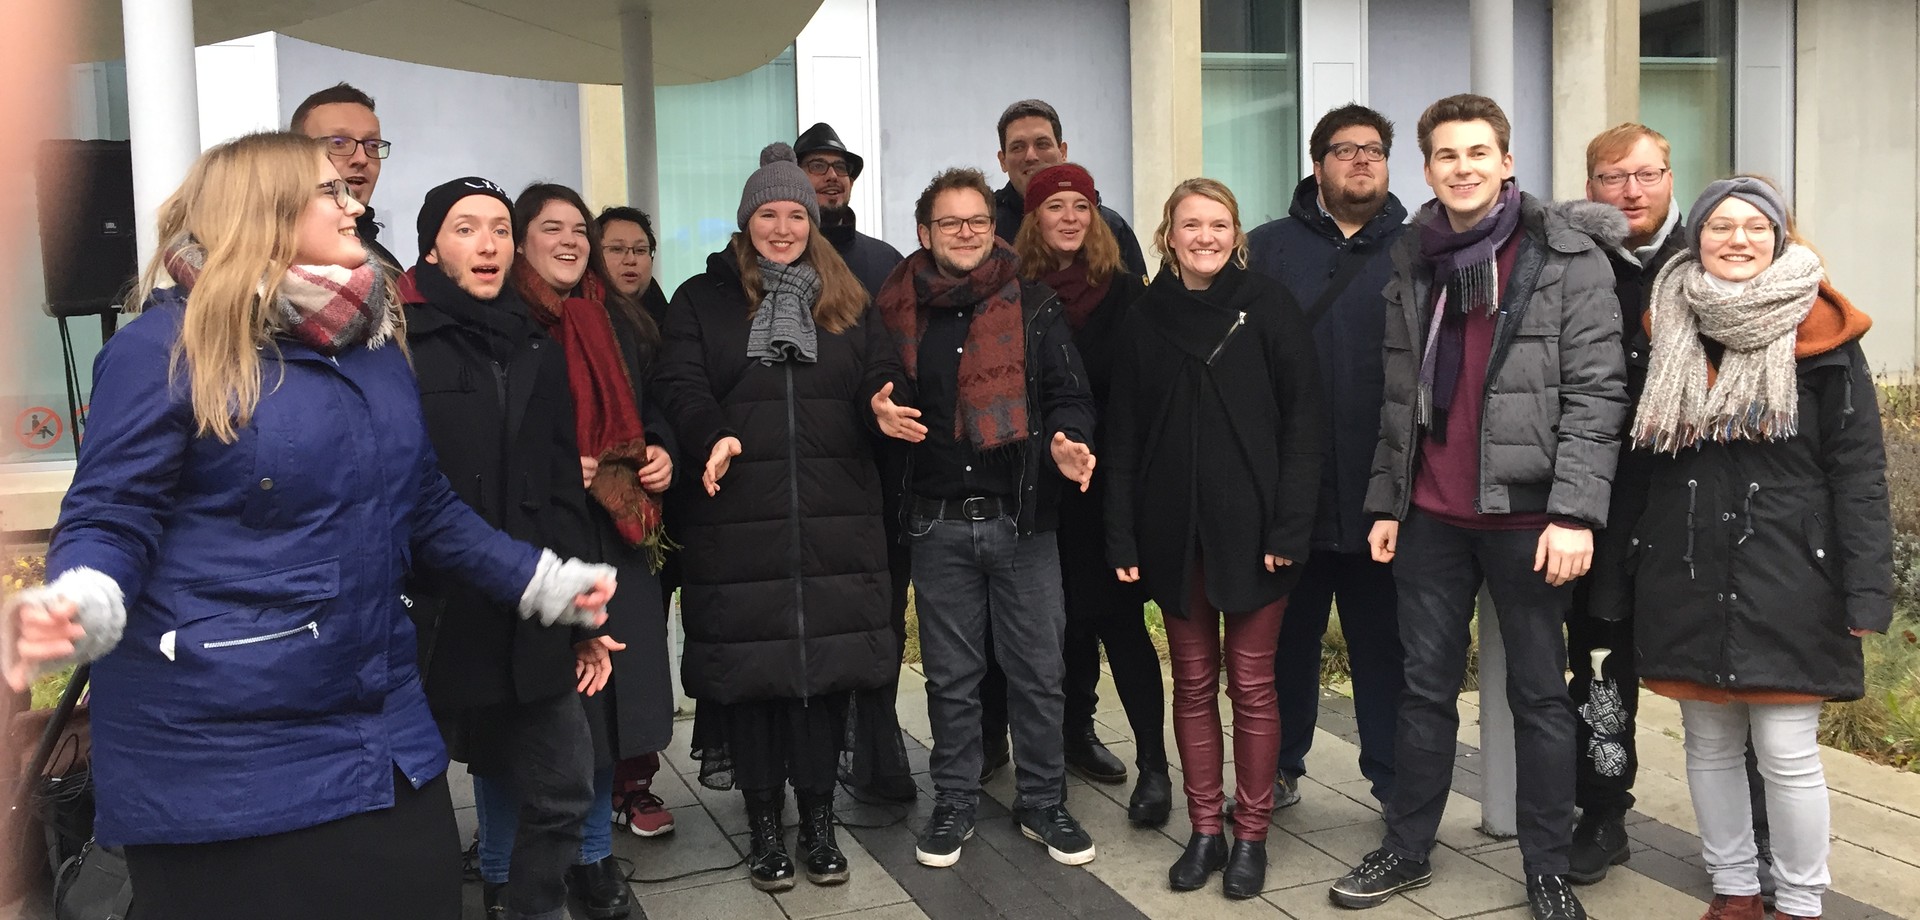 Der Chor "Sounding People" aus Dortmund vor dem Phönix-Haus der LWL-Klinik Dortmund